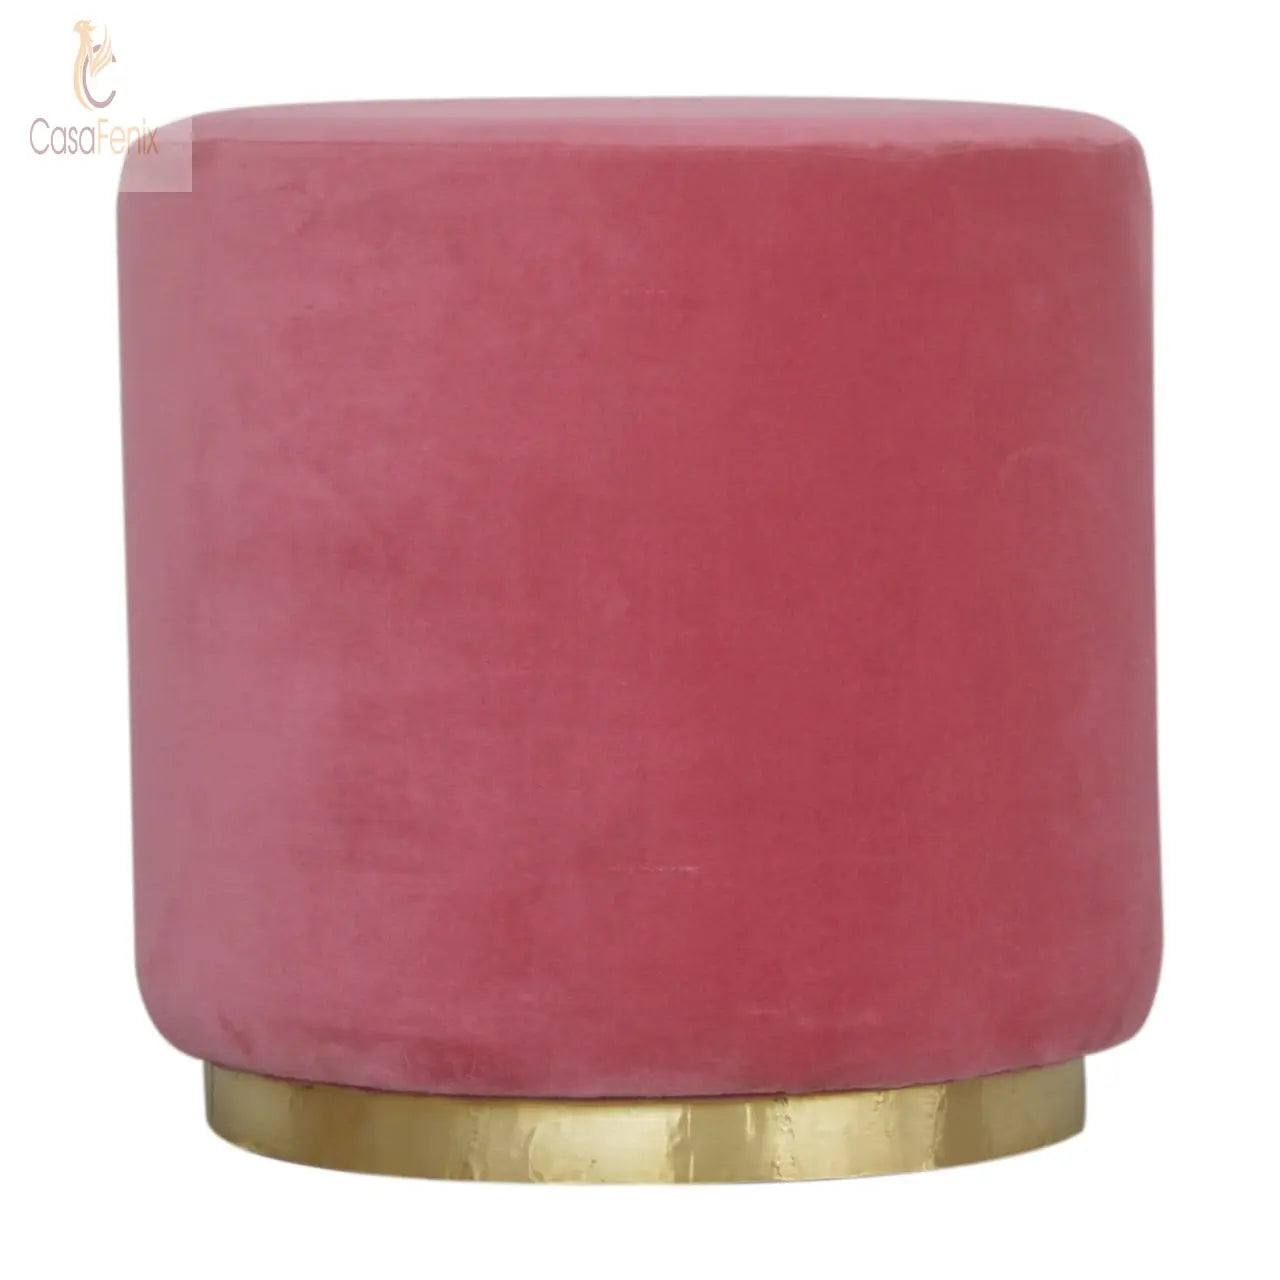 Large Pink Velvet Upholstered Footstool with Gold Base - CasaFenix